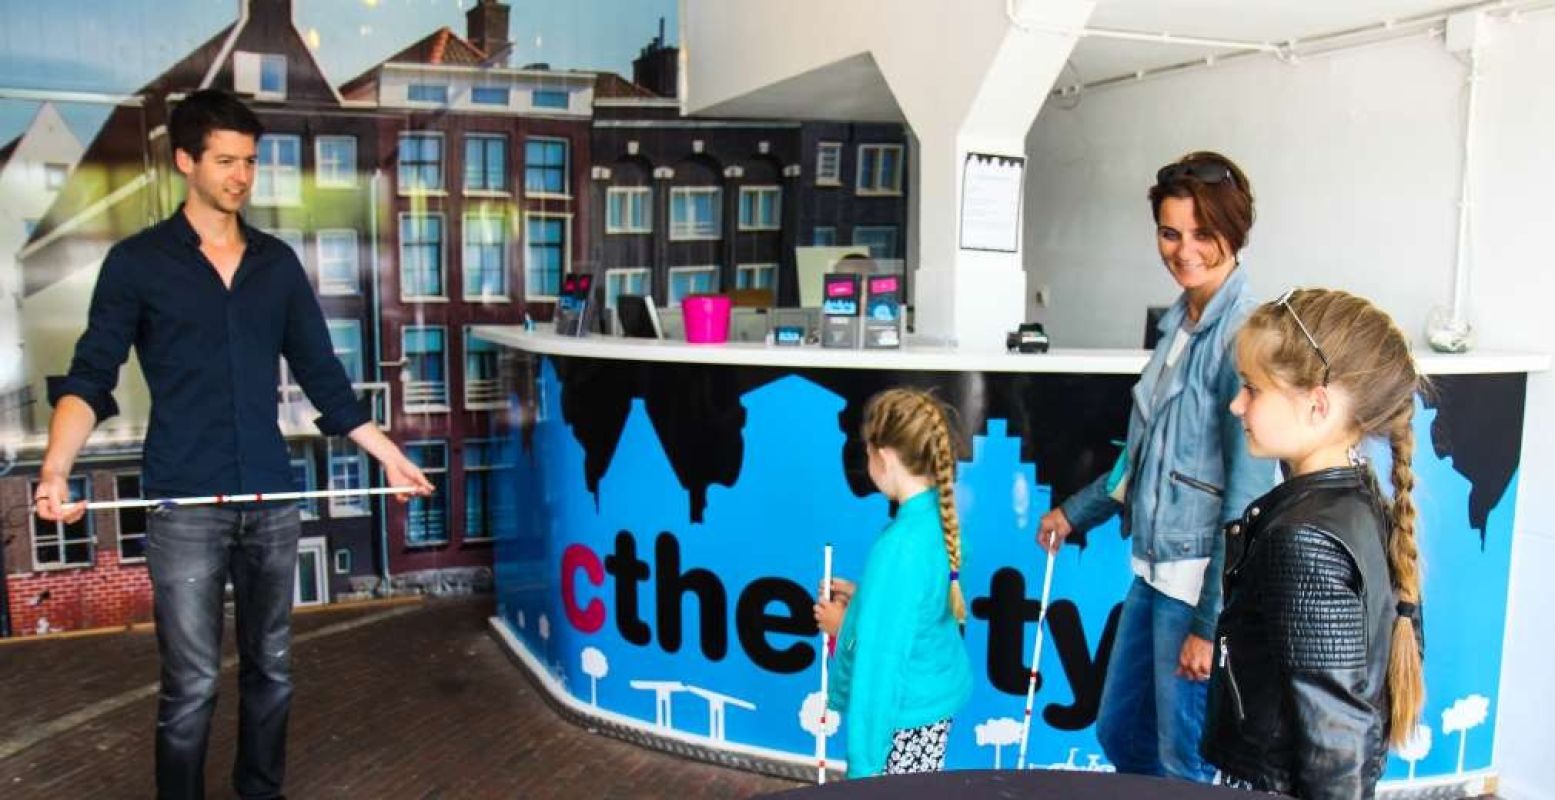 Ontdek Amsterdam als een blinde. Foto: CtheCity.